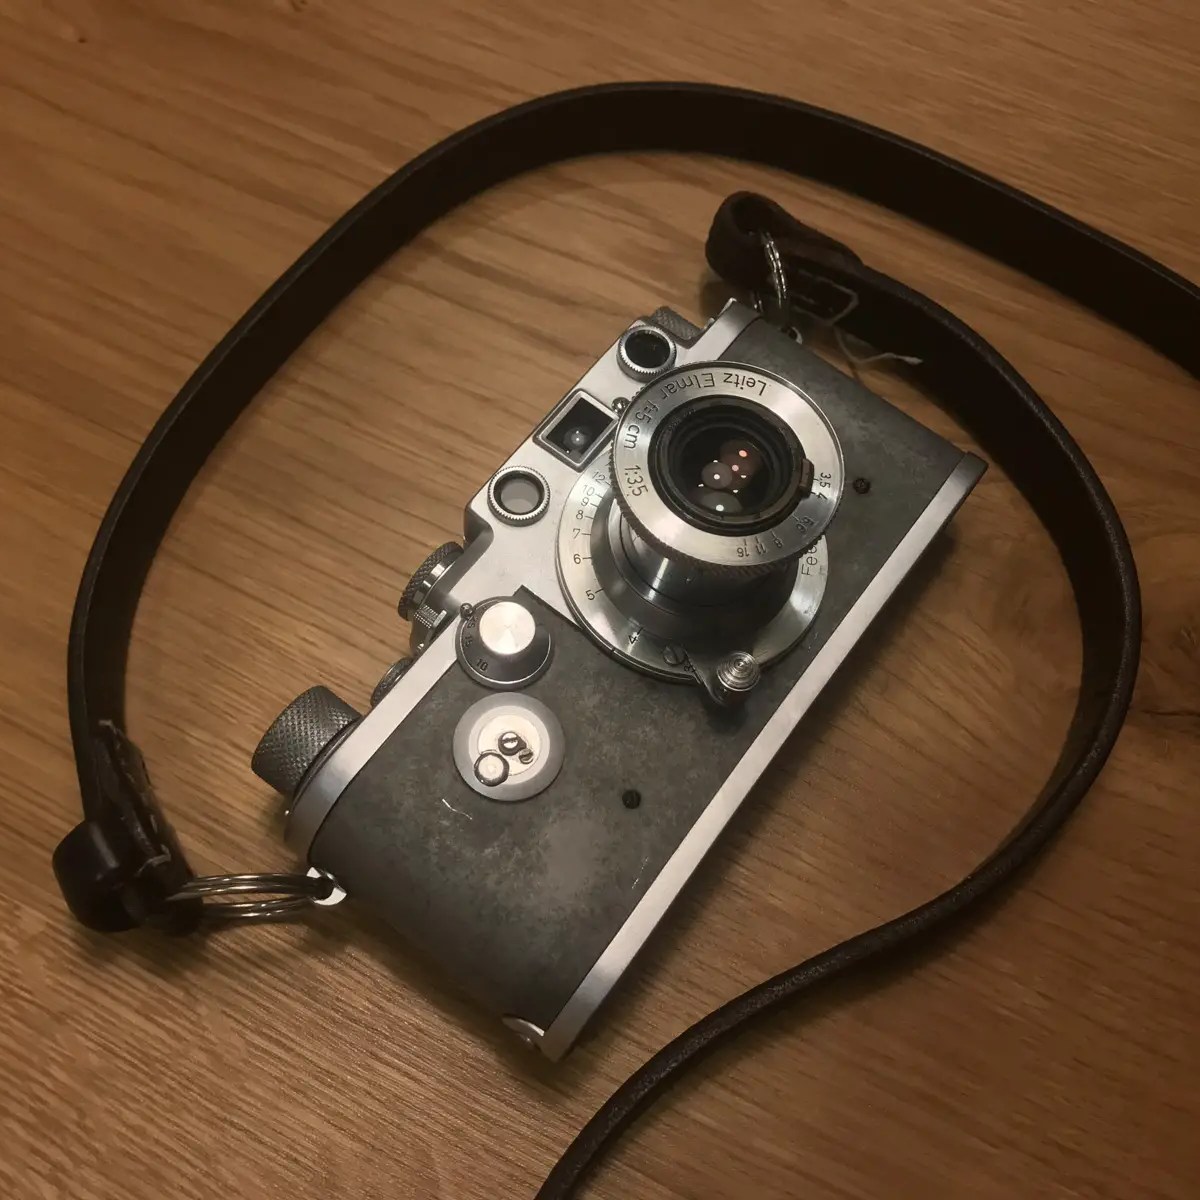 My Leica IIIf and Elmar 5cm f/3.5 lens